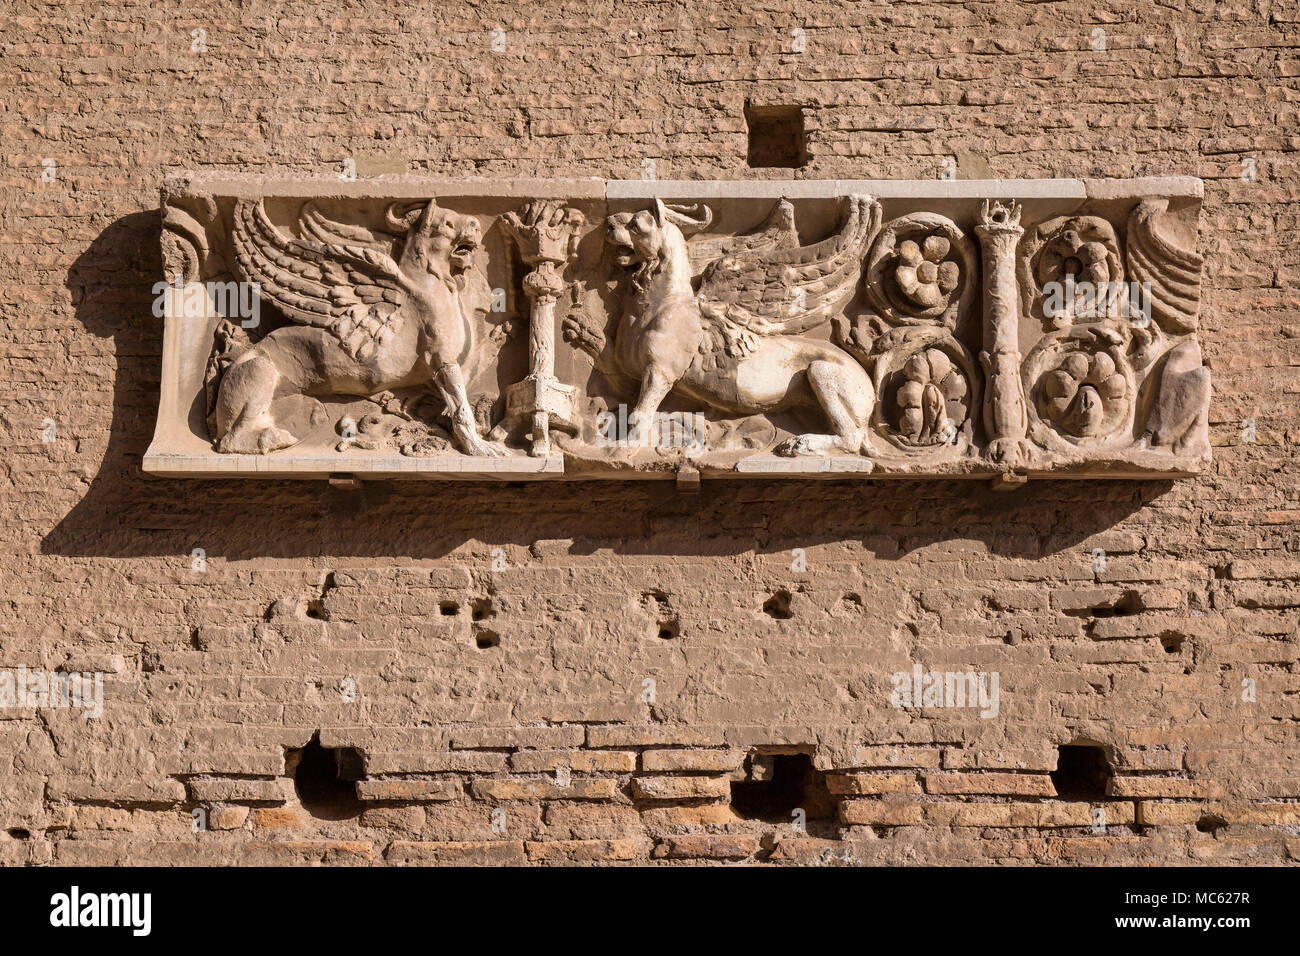 Ein Beispiel der Römischen steinmetzarbeit an der Wand in den Ruinen von Palatin, Rom, Italien. Stockfoto